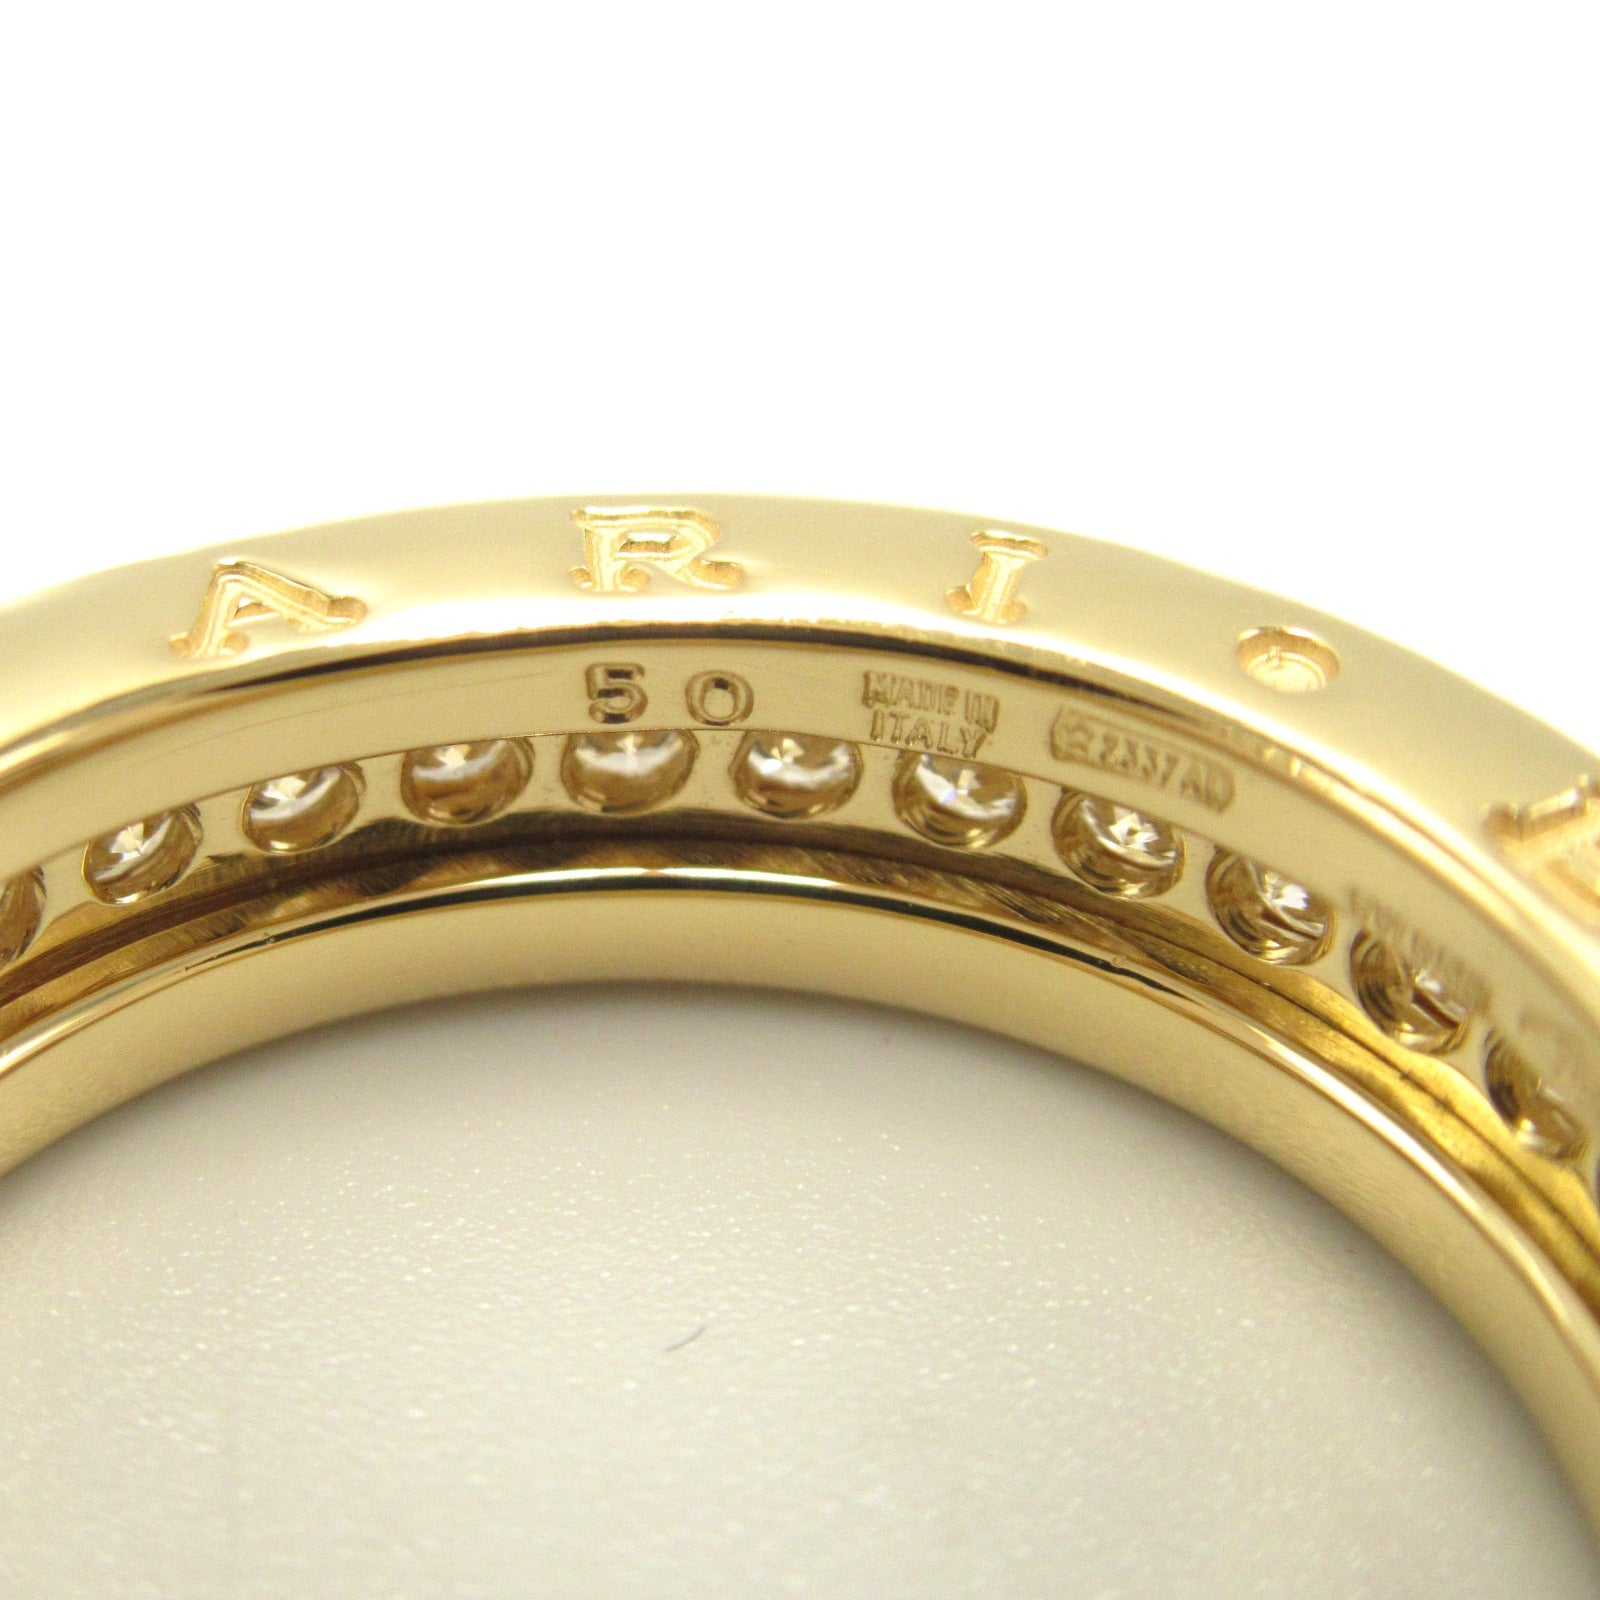 Bulgari BVLGARI B-zero1 Beezero One 4 Band Ring Ring Ring Ring Jewelry K18 (Yellow G)   G